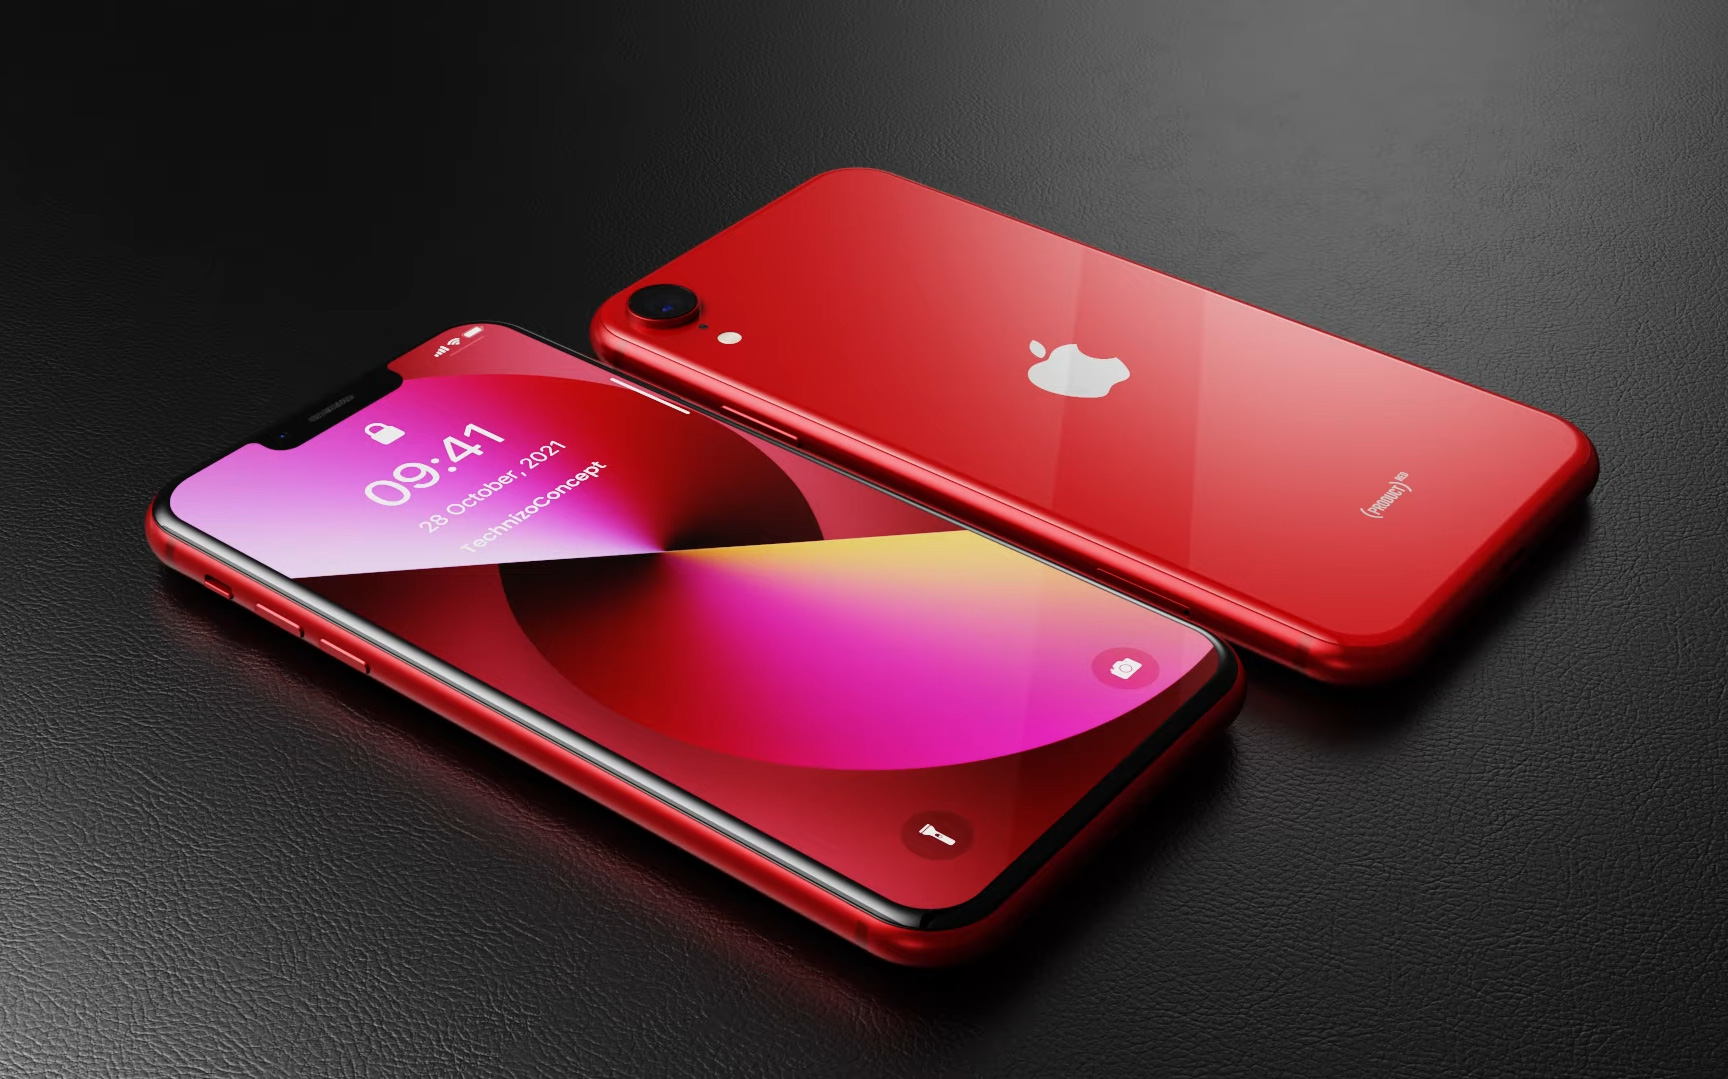 iPhone giá 9 triệu tiếp tục lộ diện với loạt màu sắc cực kỳ đốn tim ngay trước thềm ra mắt